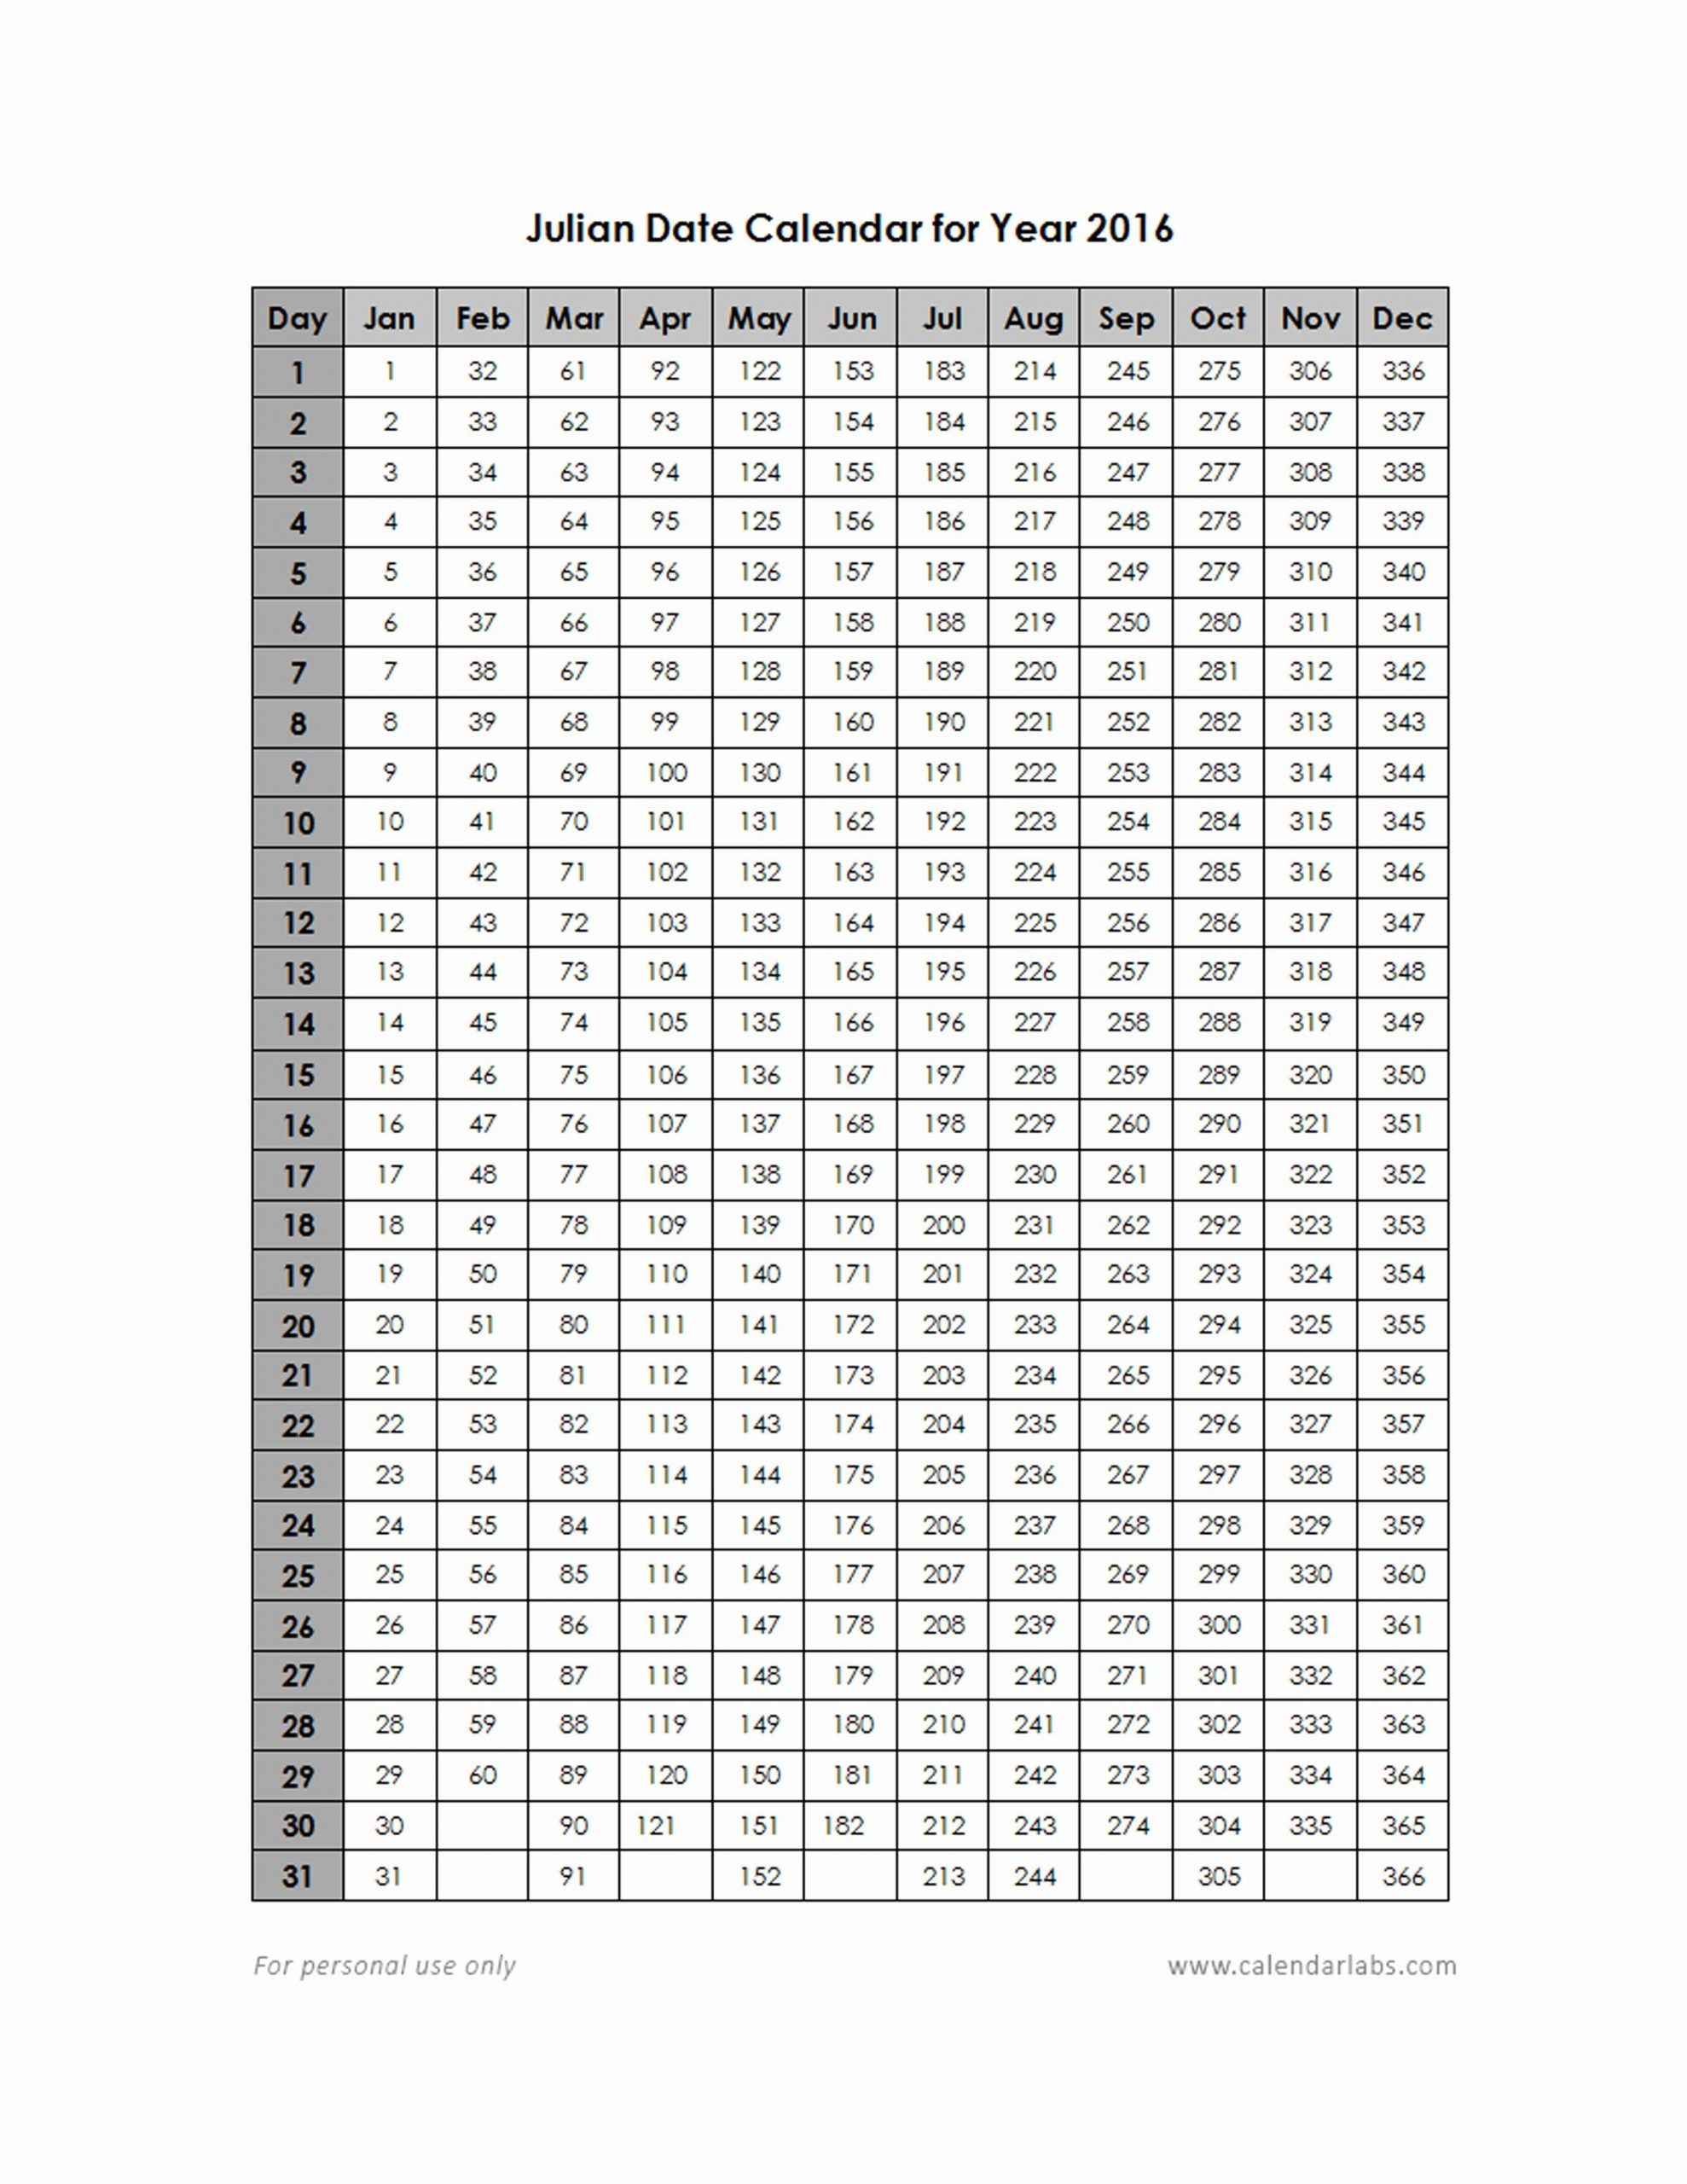 Quadax Julian Calendar | Calendar For Planning